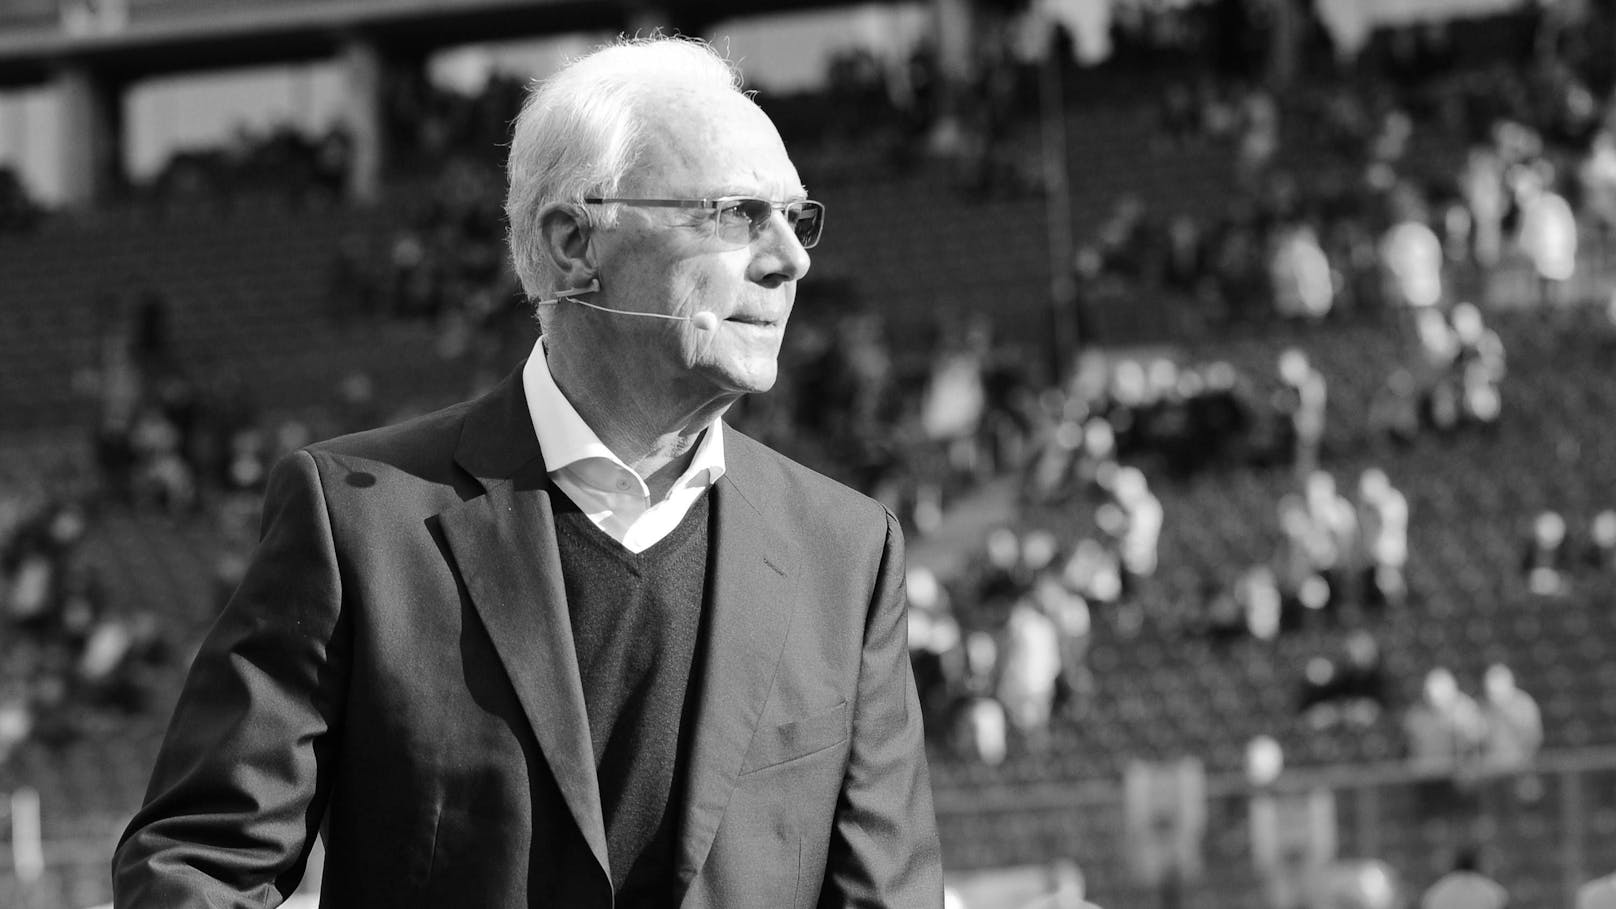 Beckenbauer beigesetzt, am Abend trauert sein FC Bayern